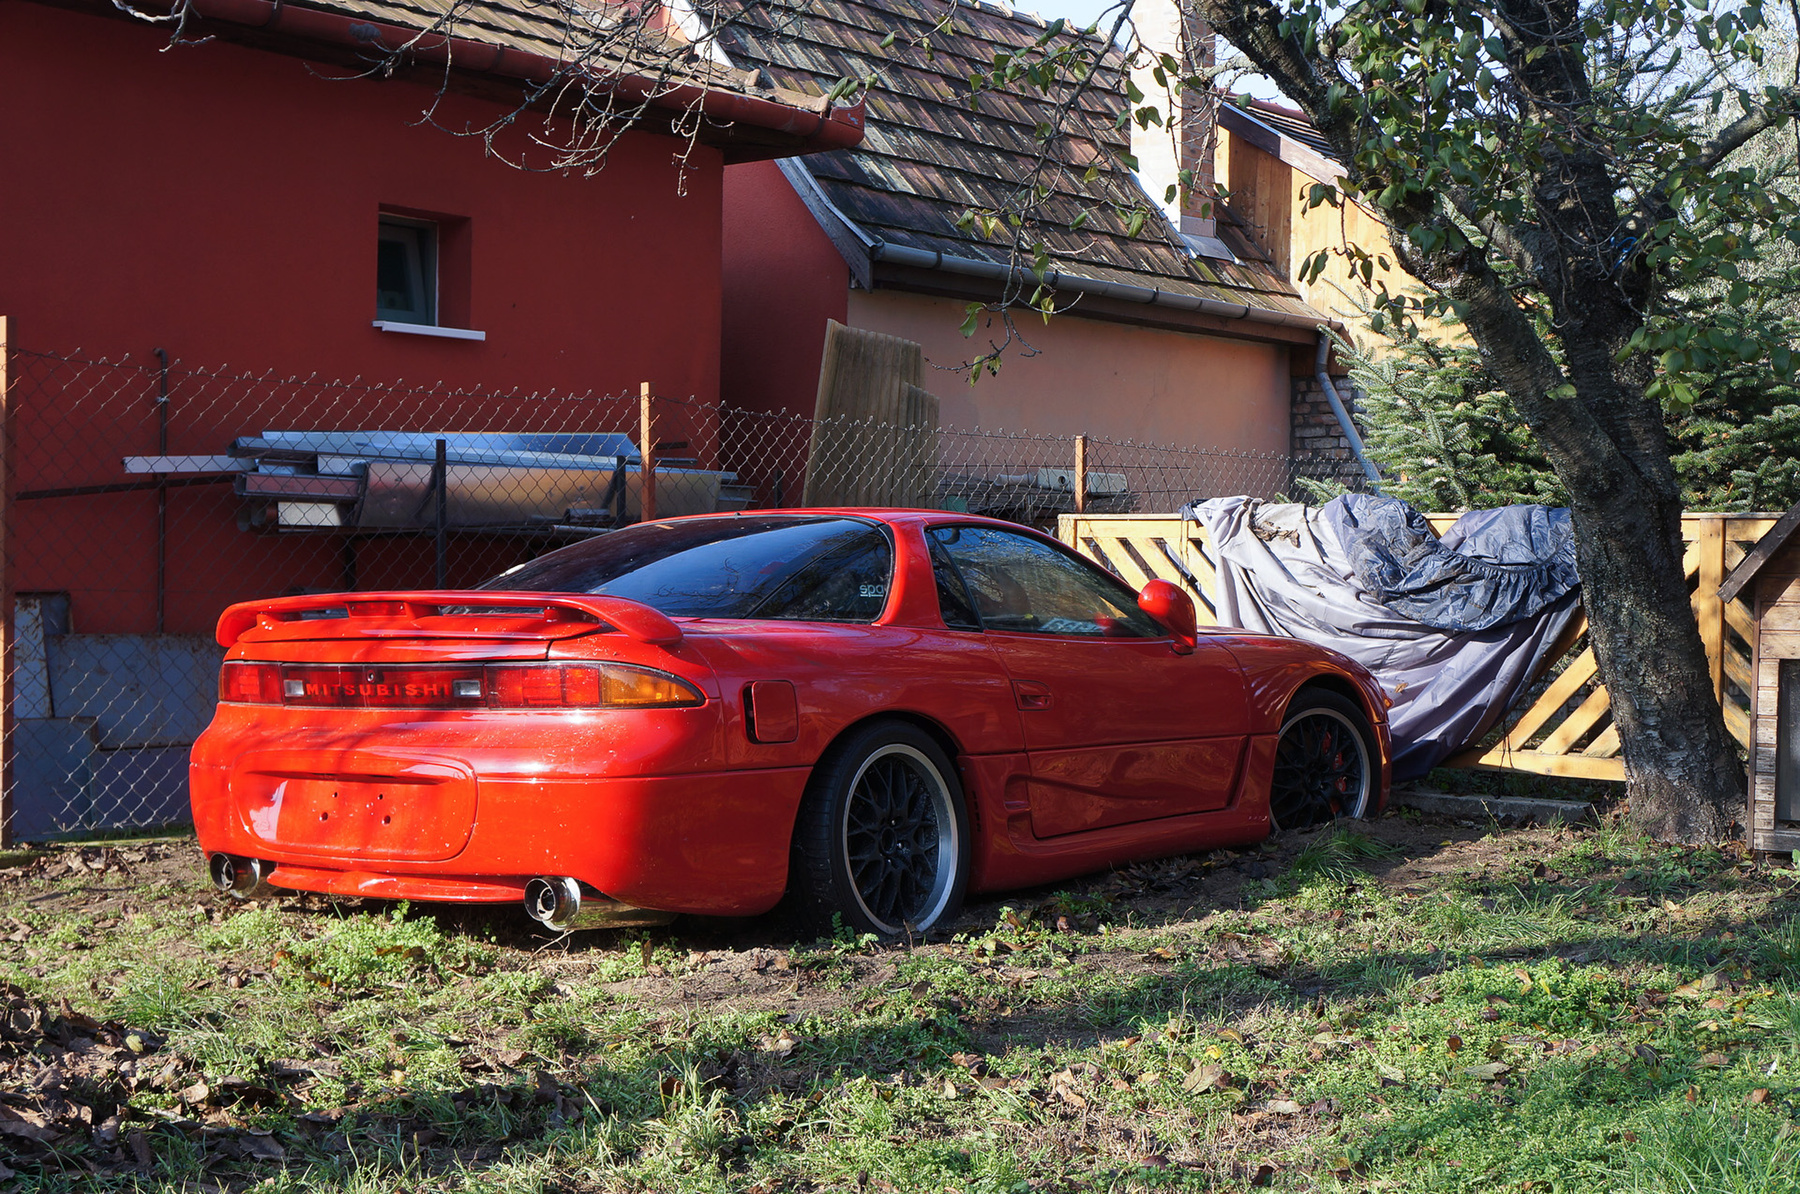 Egy másik, szerelés alatt álló autó, egy Maserati áll kint a műhely udvarán. Hátsó oldalablaka hiányzik, az utastérben bedobált alkatrészek láthatók. Ezt a fotót Márk készítette, amikor elment megnézni saját autóját Lászlóhoz